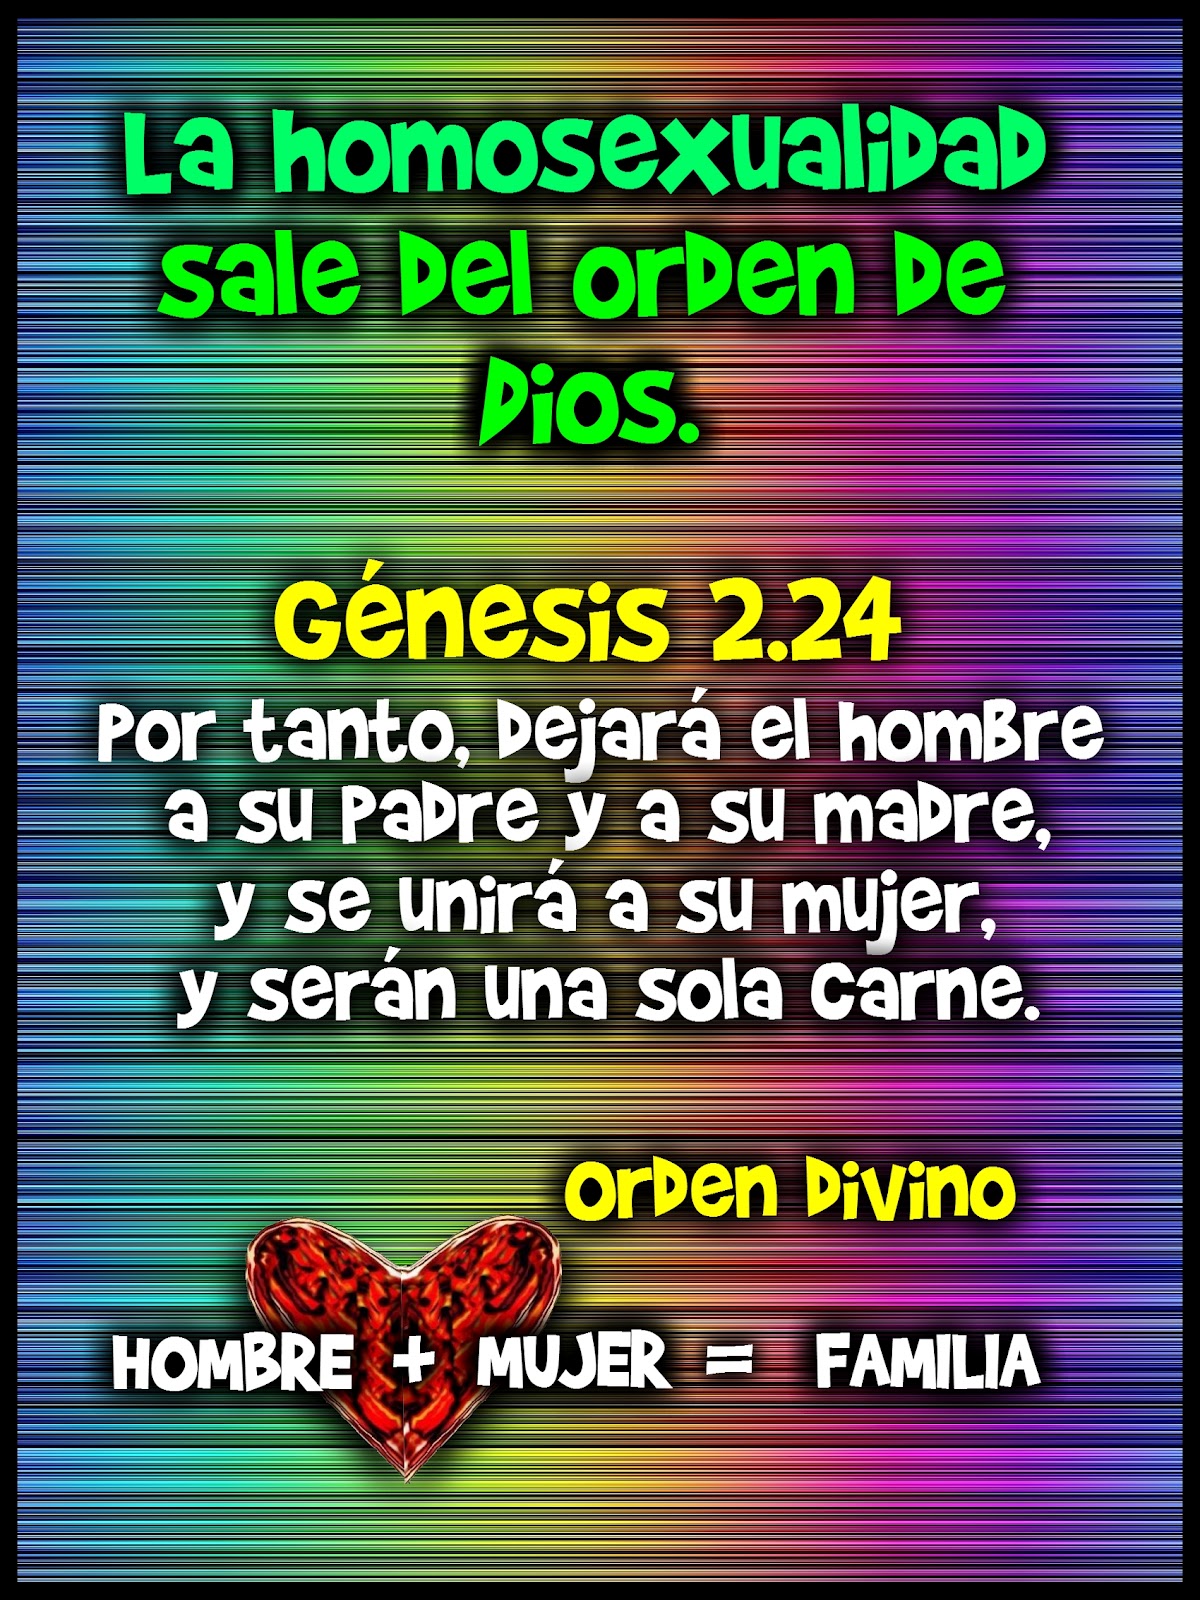 Genesis 2.24 Evangelio en colores